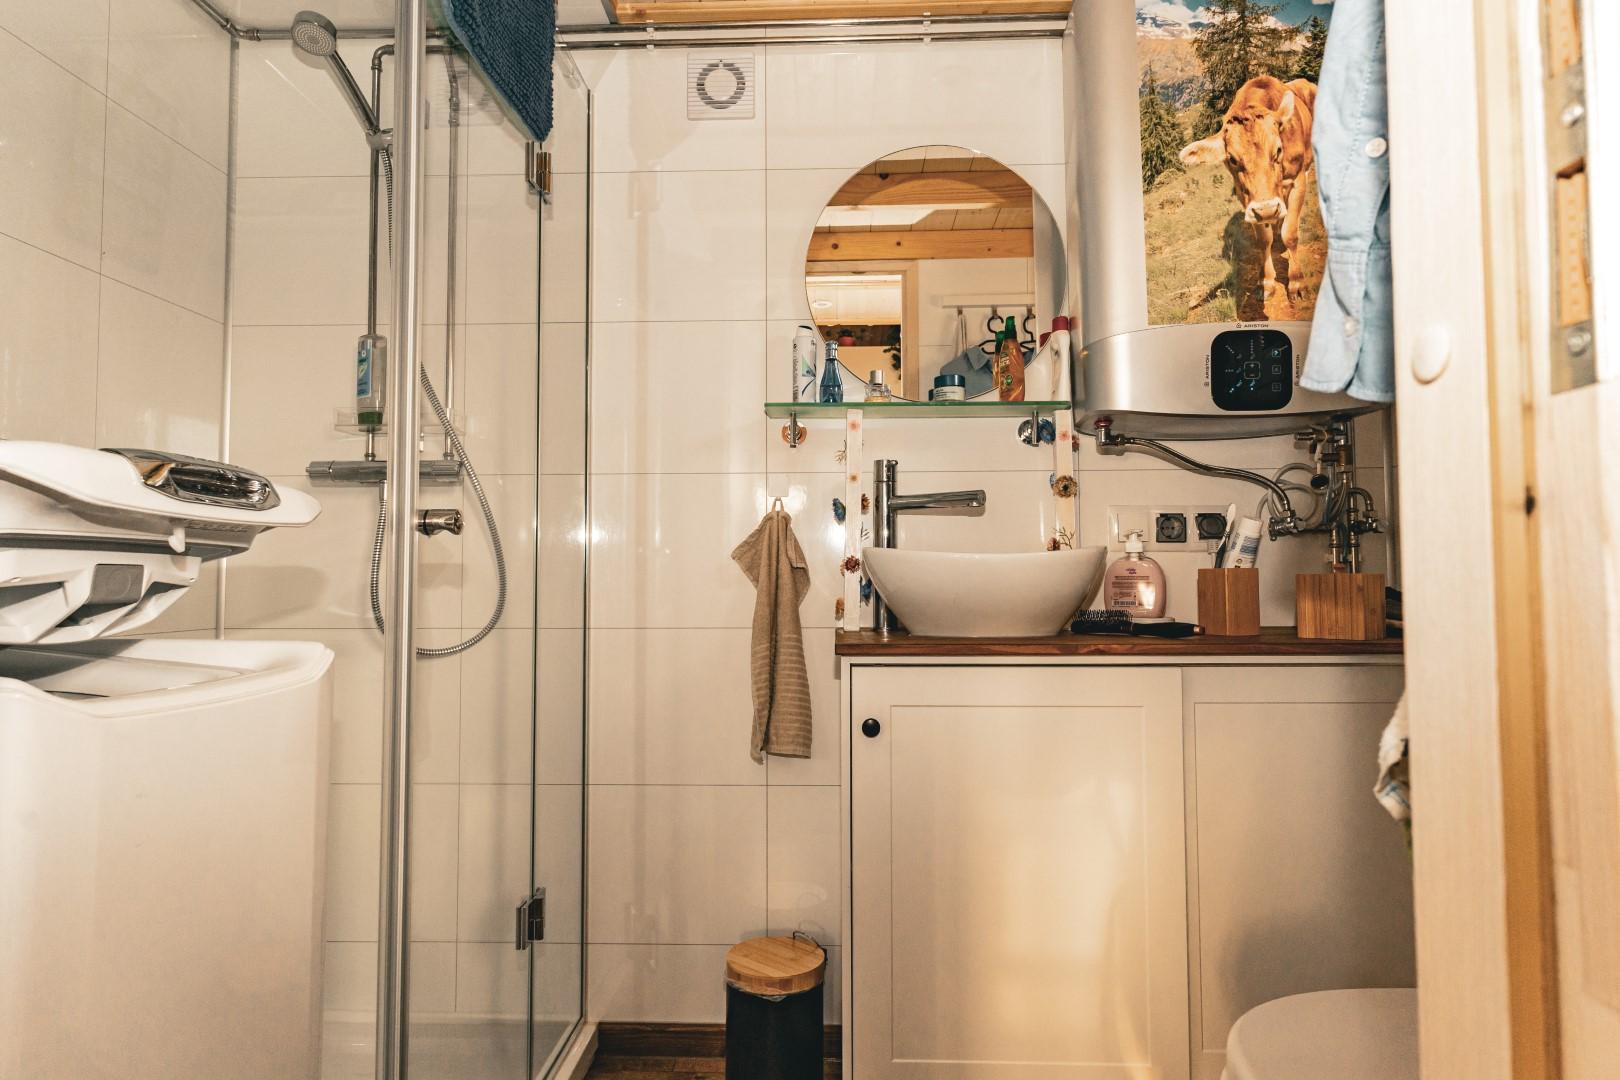 Bad mit Dusche, WC und Toplader-Waschmaschine (li.)